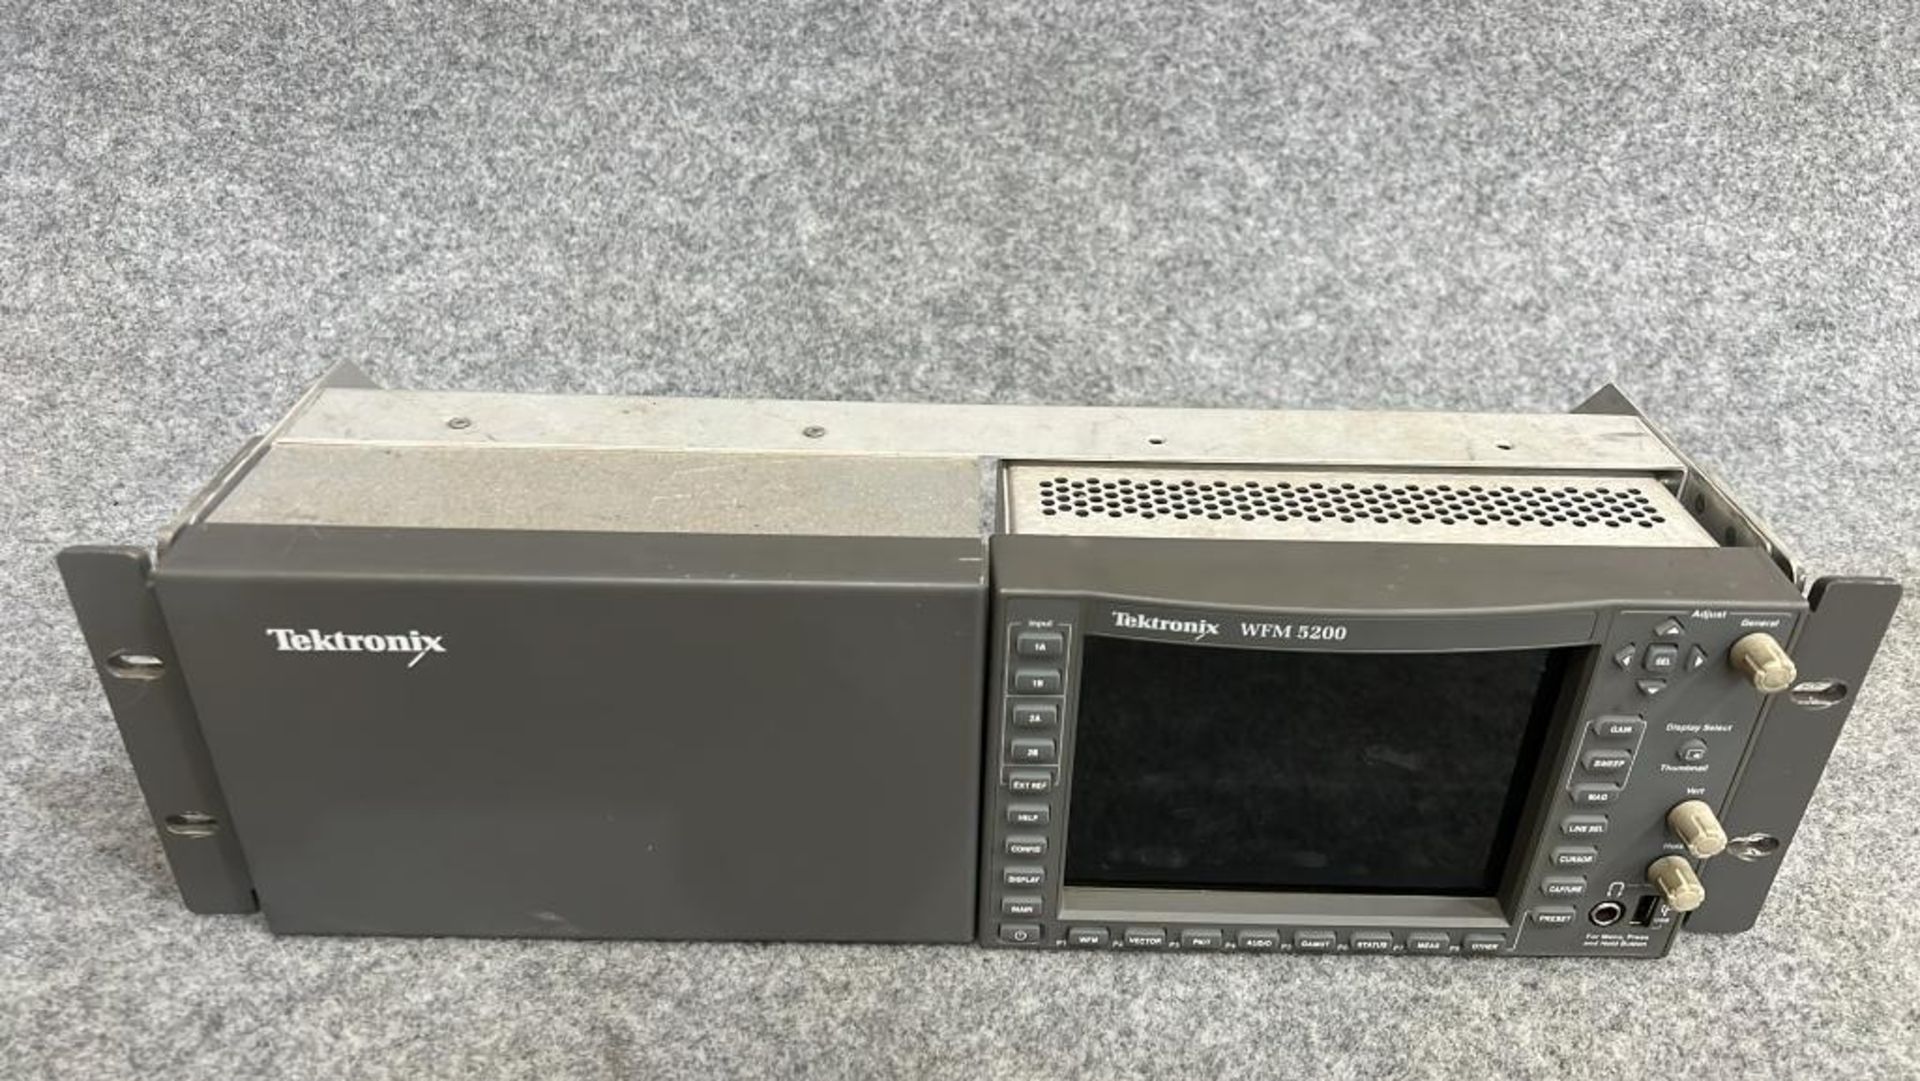 Tektronix WFM 5200, with Pu. Model: TektronixVFM 5200